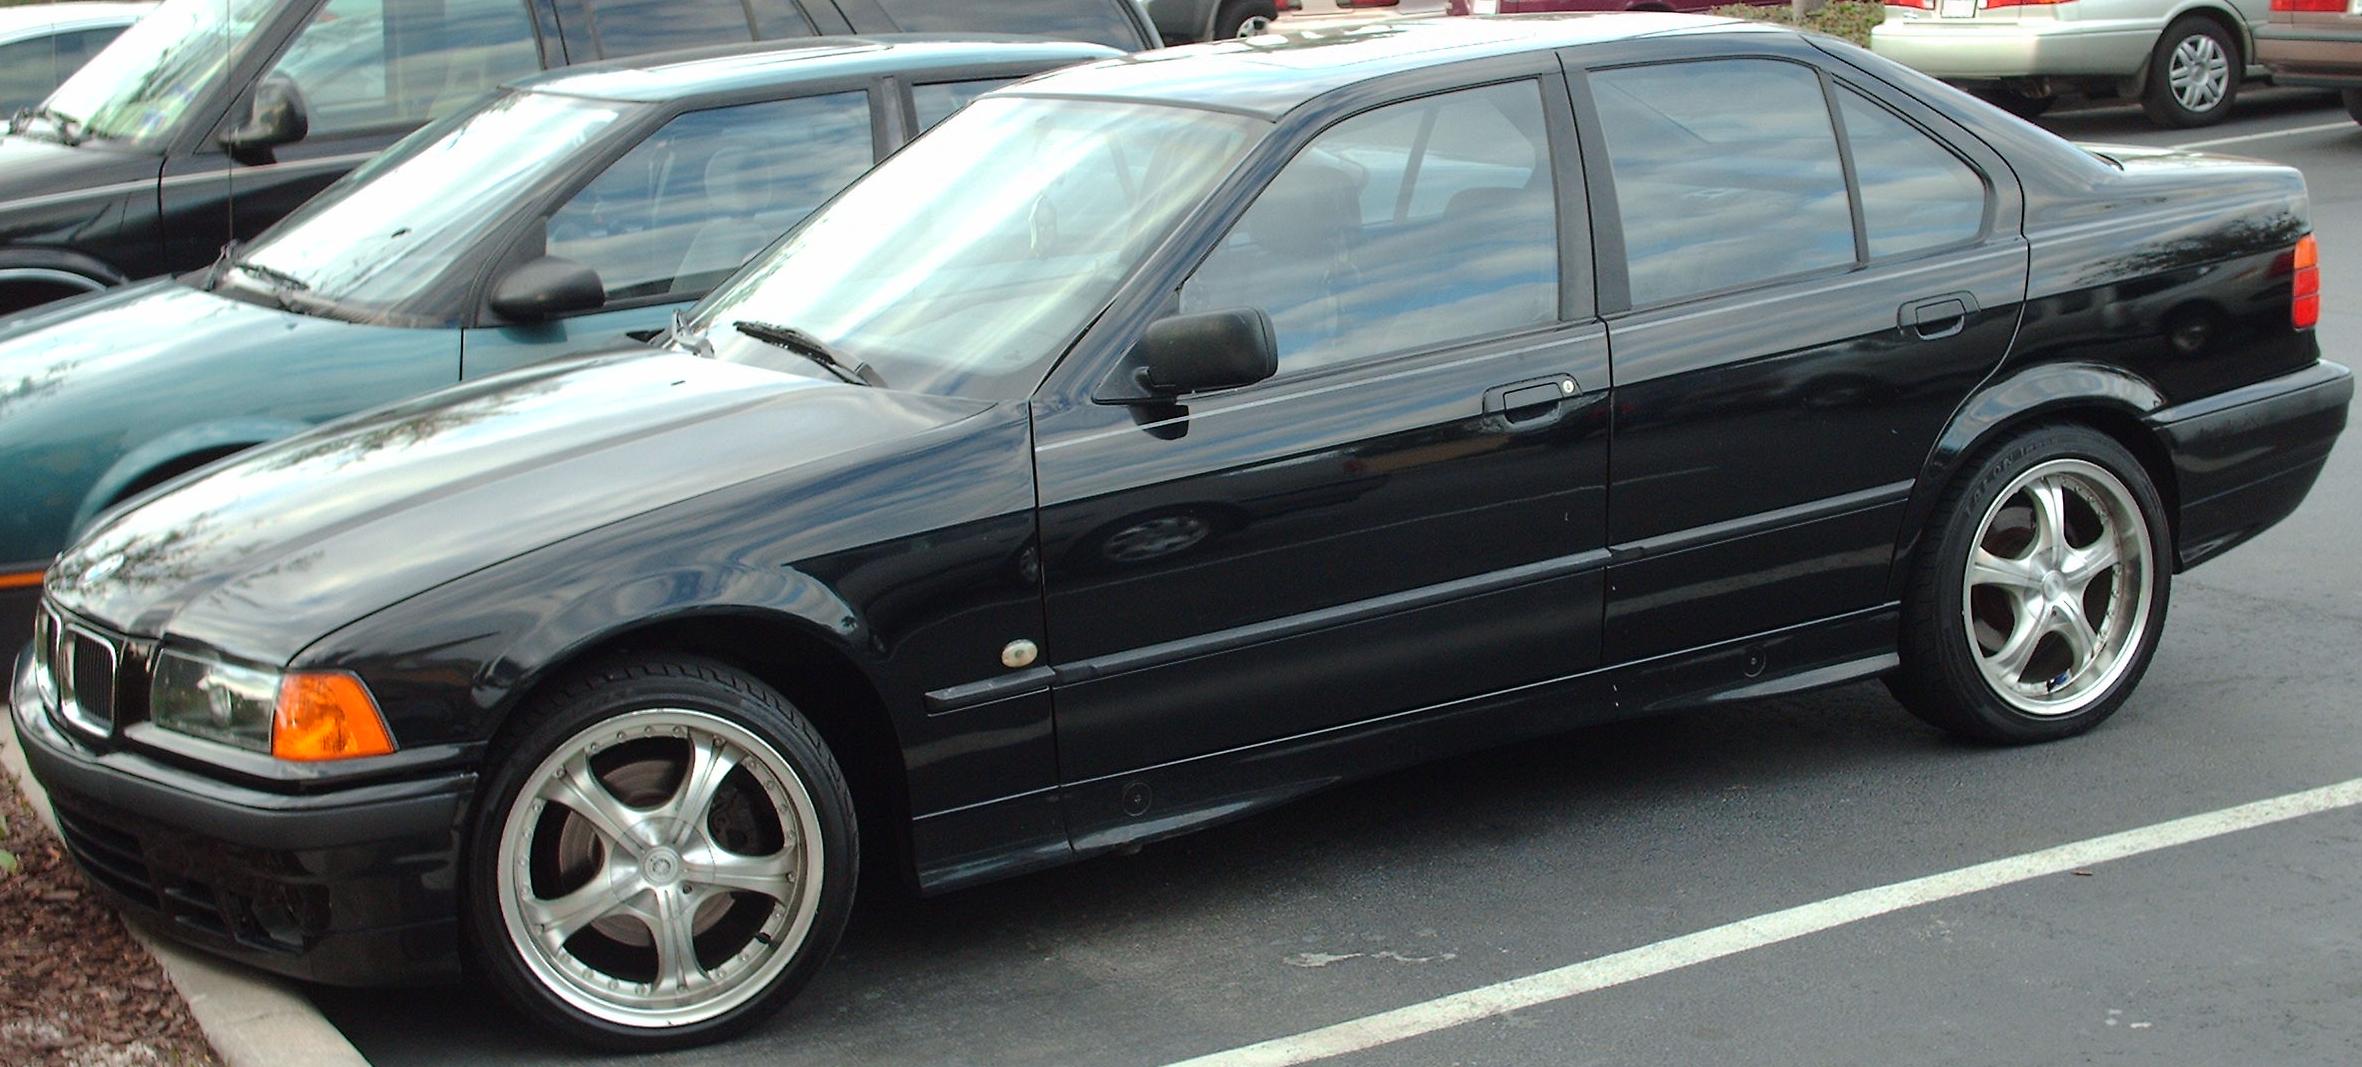 File:Beamer E36 Sedan.JPG - Wikimedia Commons